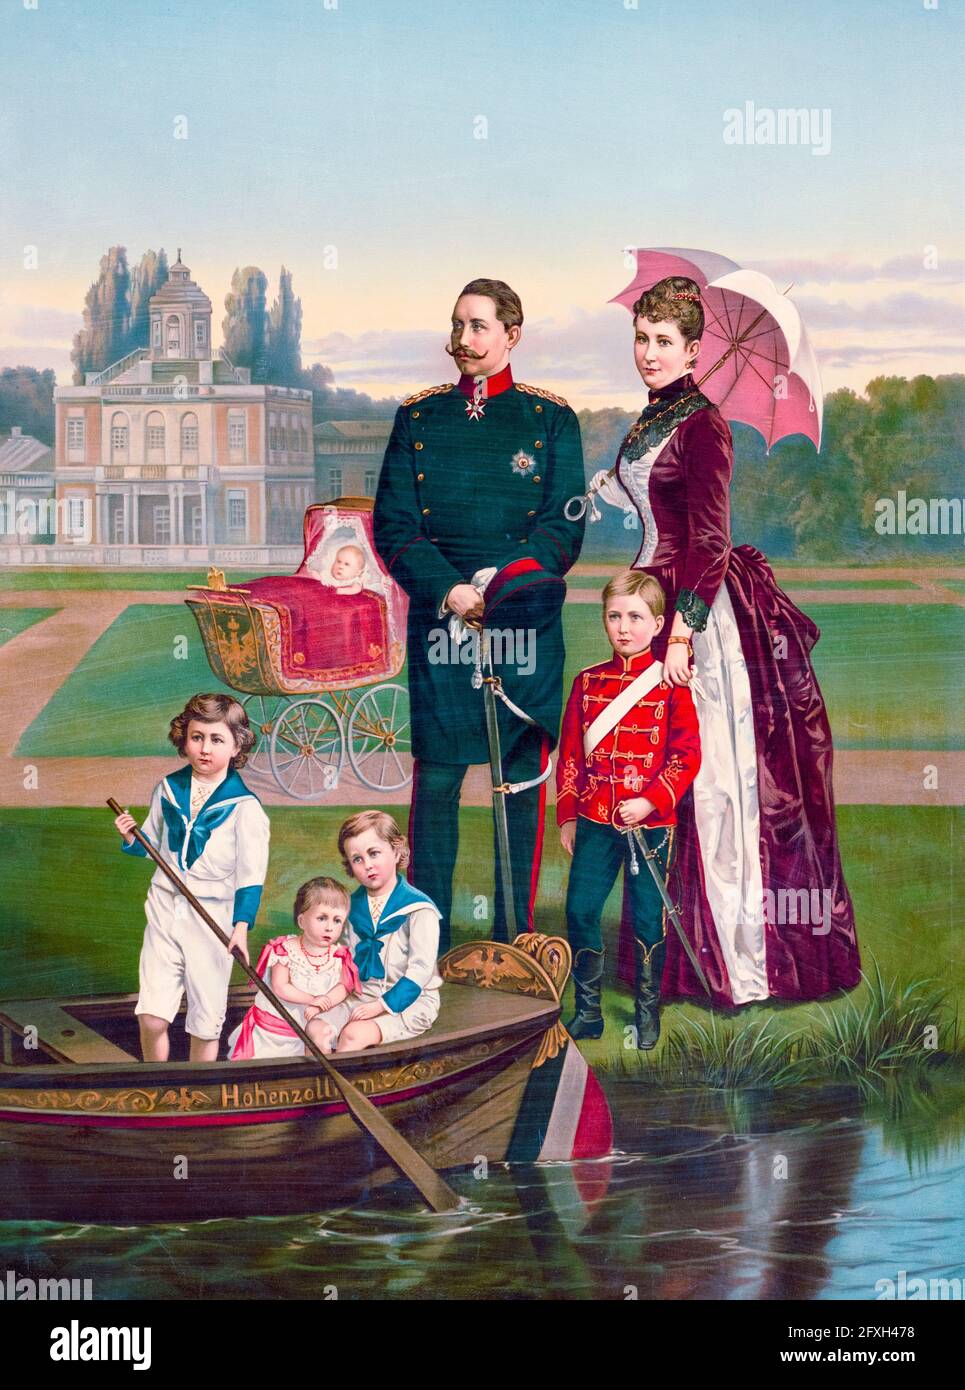 Portrait de famille de Guillaume II (1859-1941) (Guillaume II), le dernier empereur allemand (Kaiser) et roi de Prusse (1888-1918) et de sa femme Kaiserin Augusta Victoria du Schleswig-Holstein (1858-1921), avec leurs enfants, imprimer 1889 Banque D'Images